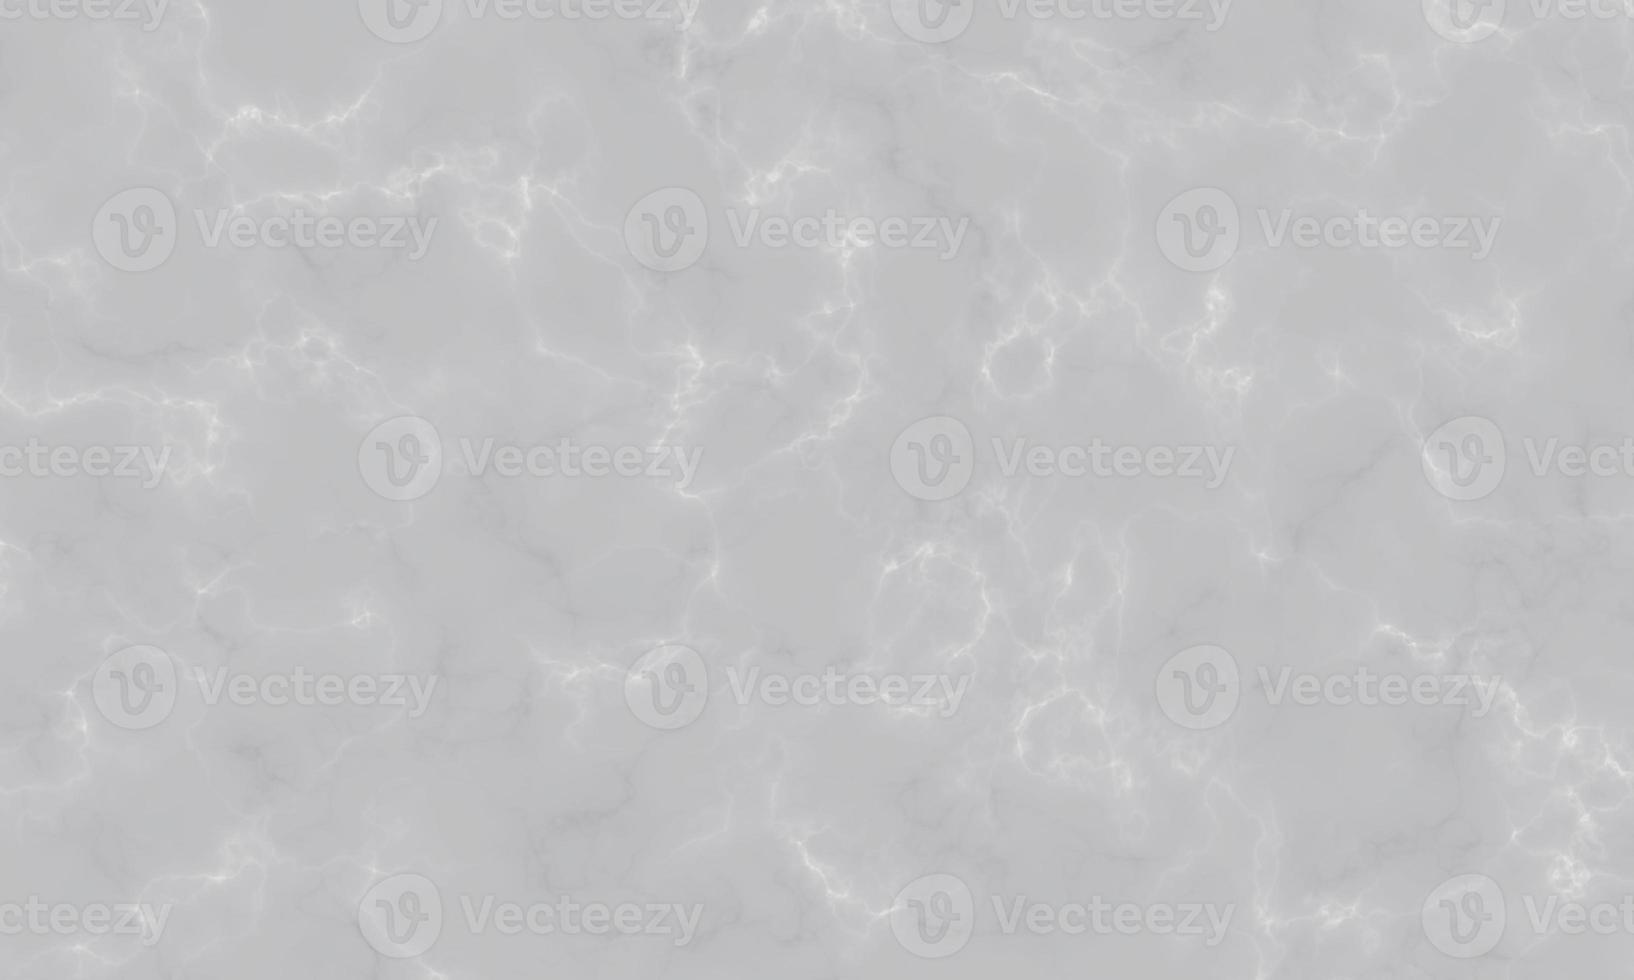 fundo de textura de mármore cinza branco com alta resolução foto